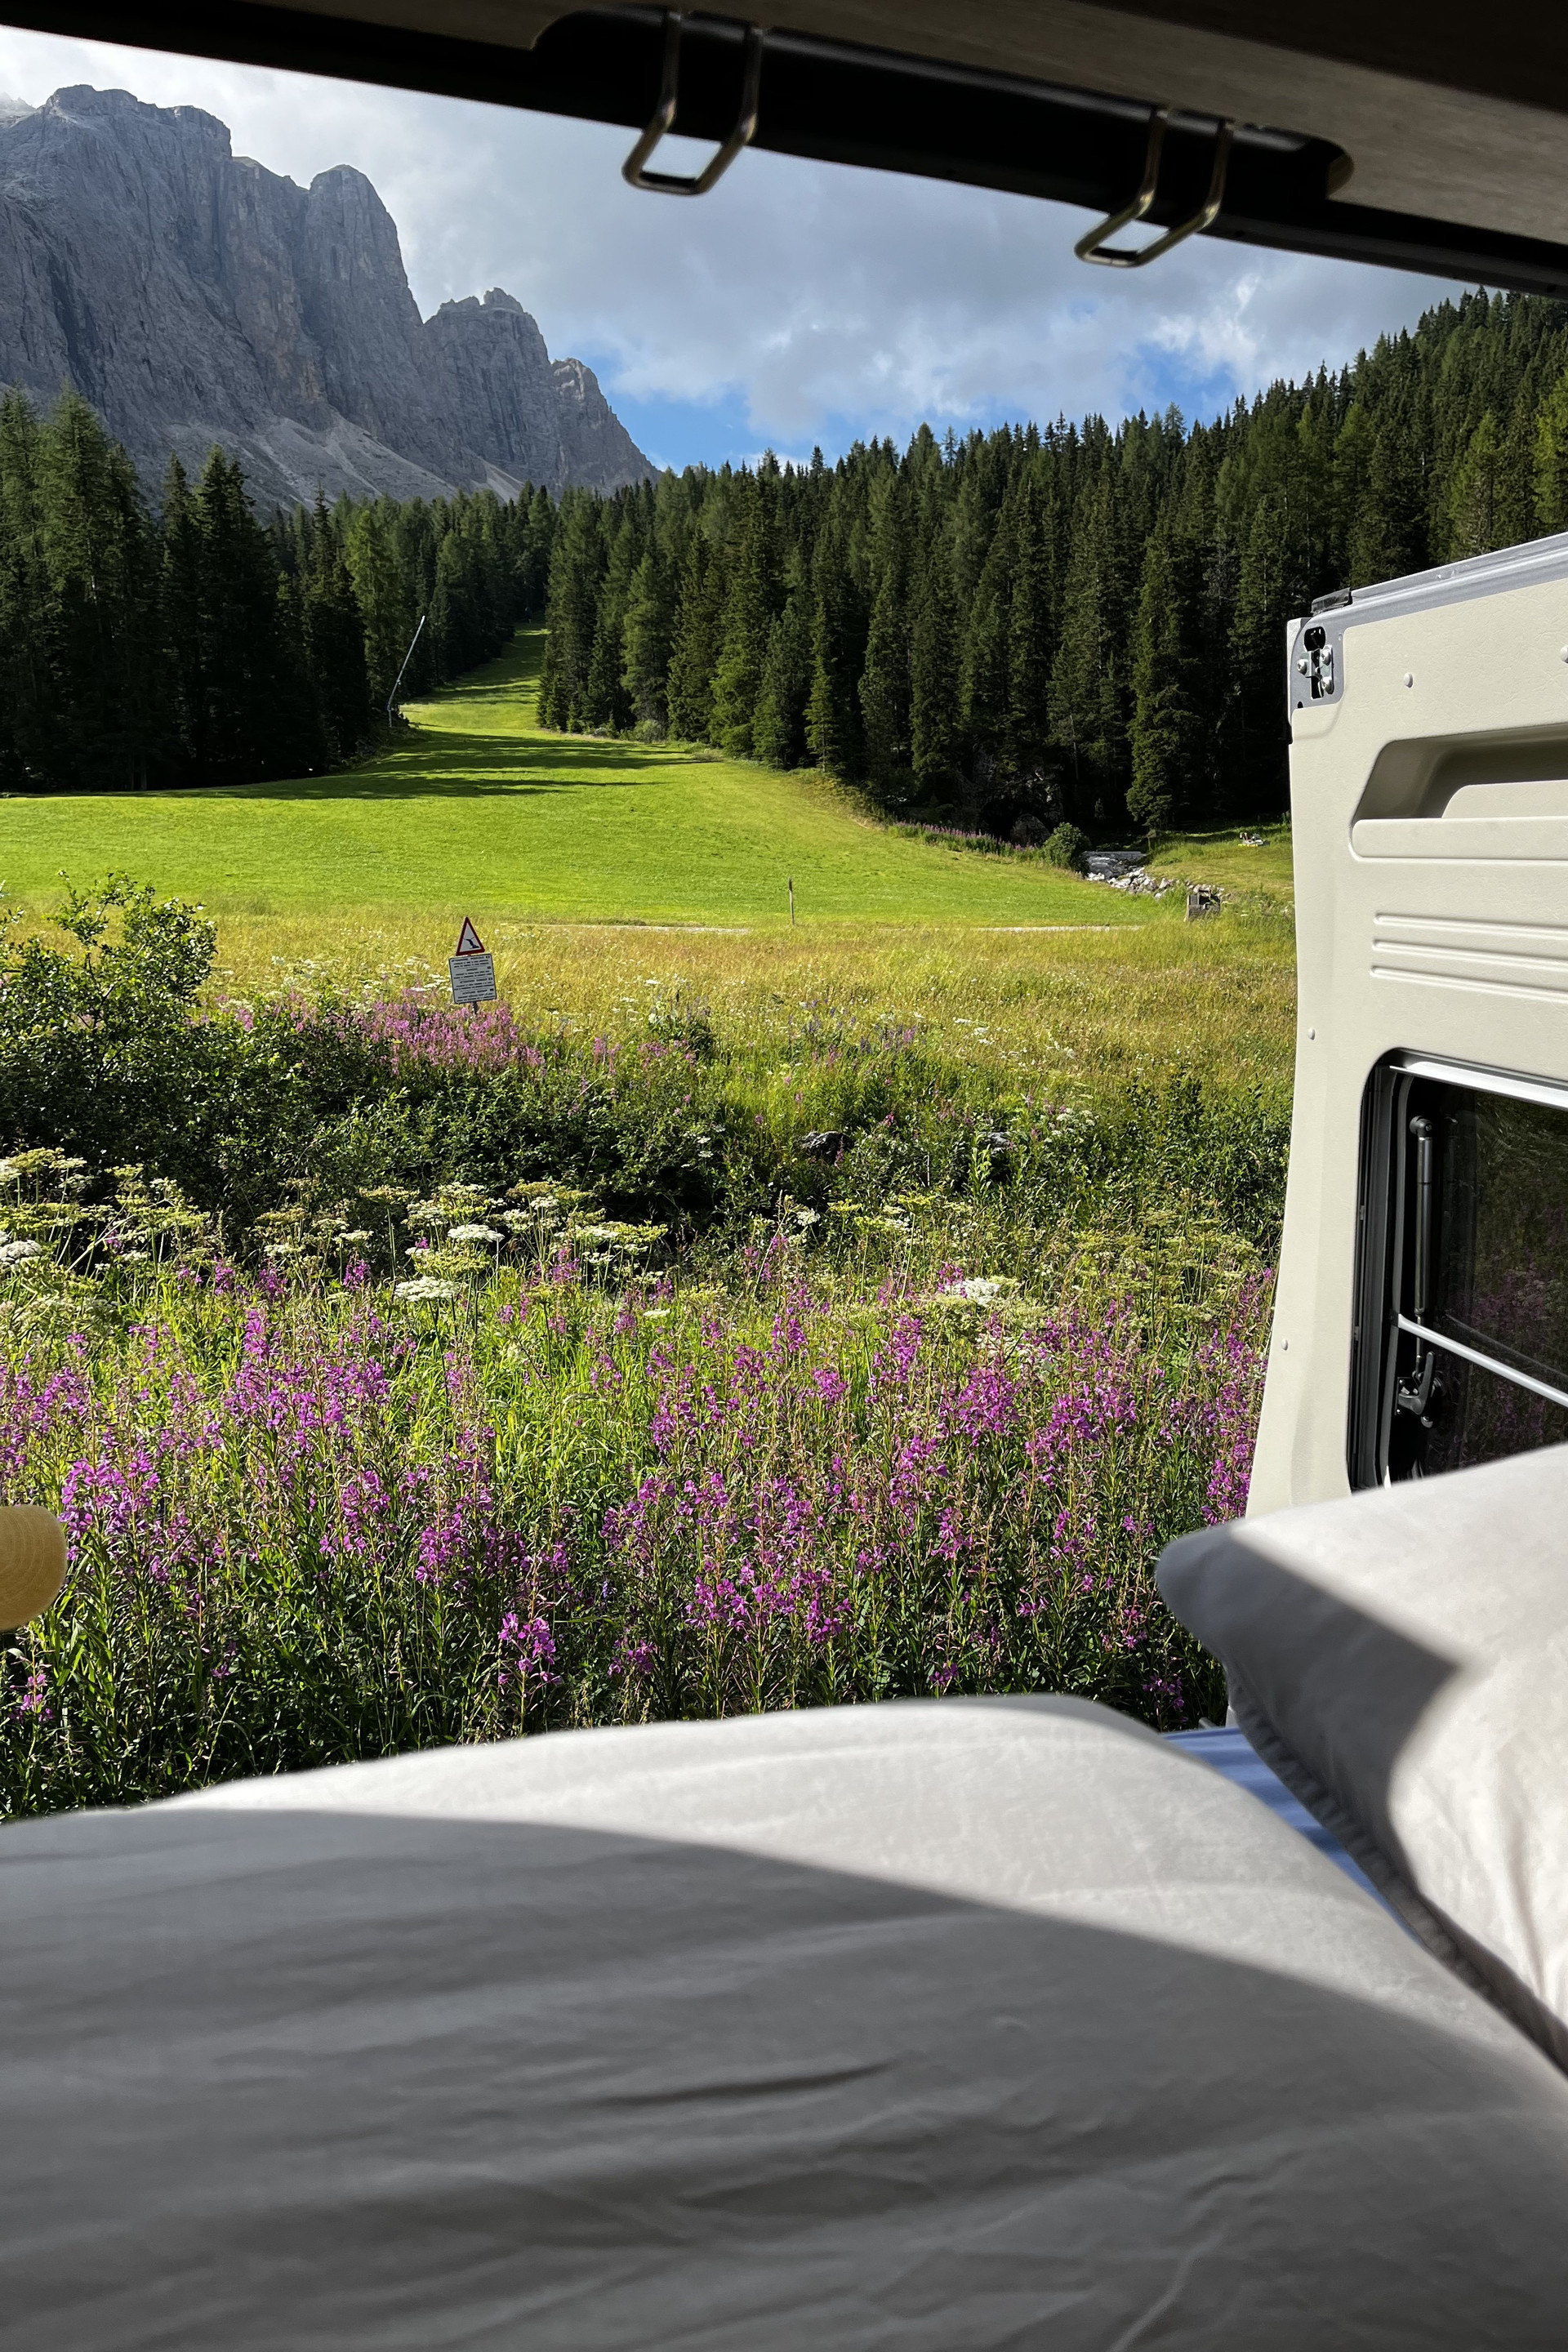 ein traumhafter Ausblick auf die Berge vom Bett des Campervans